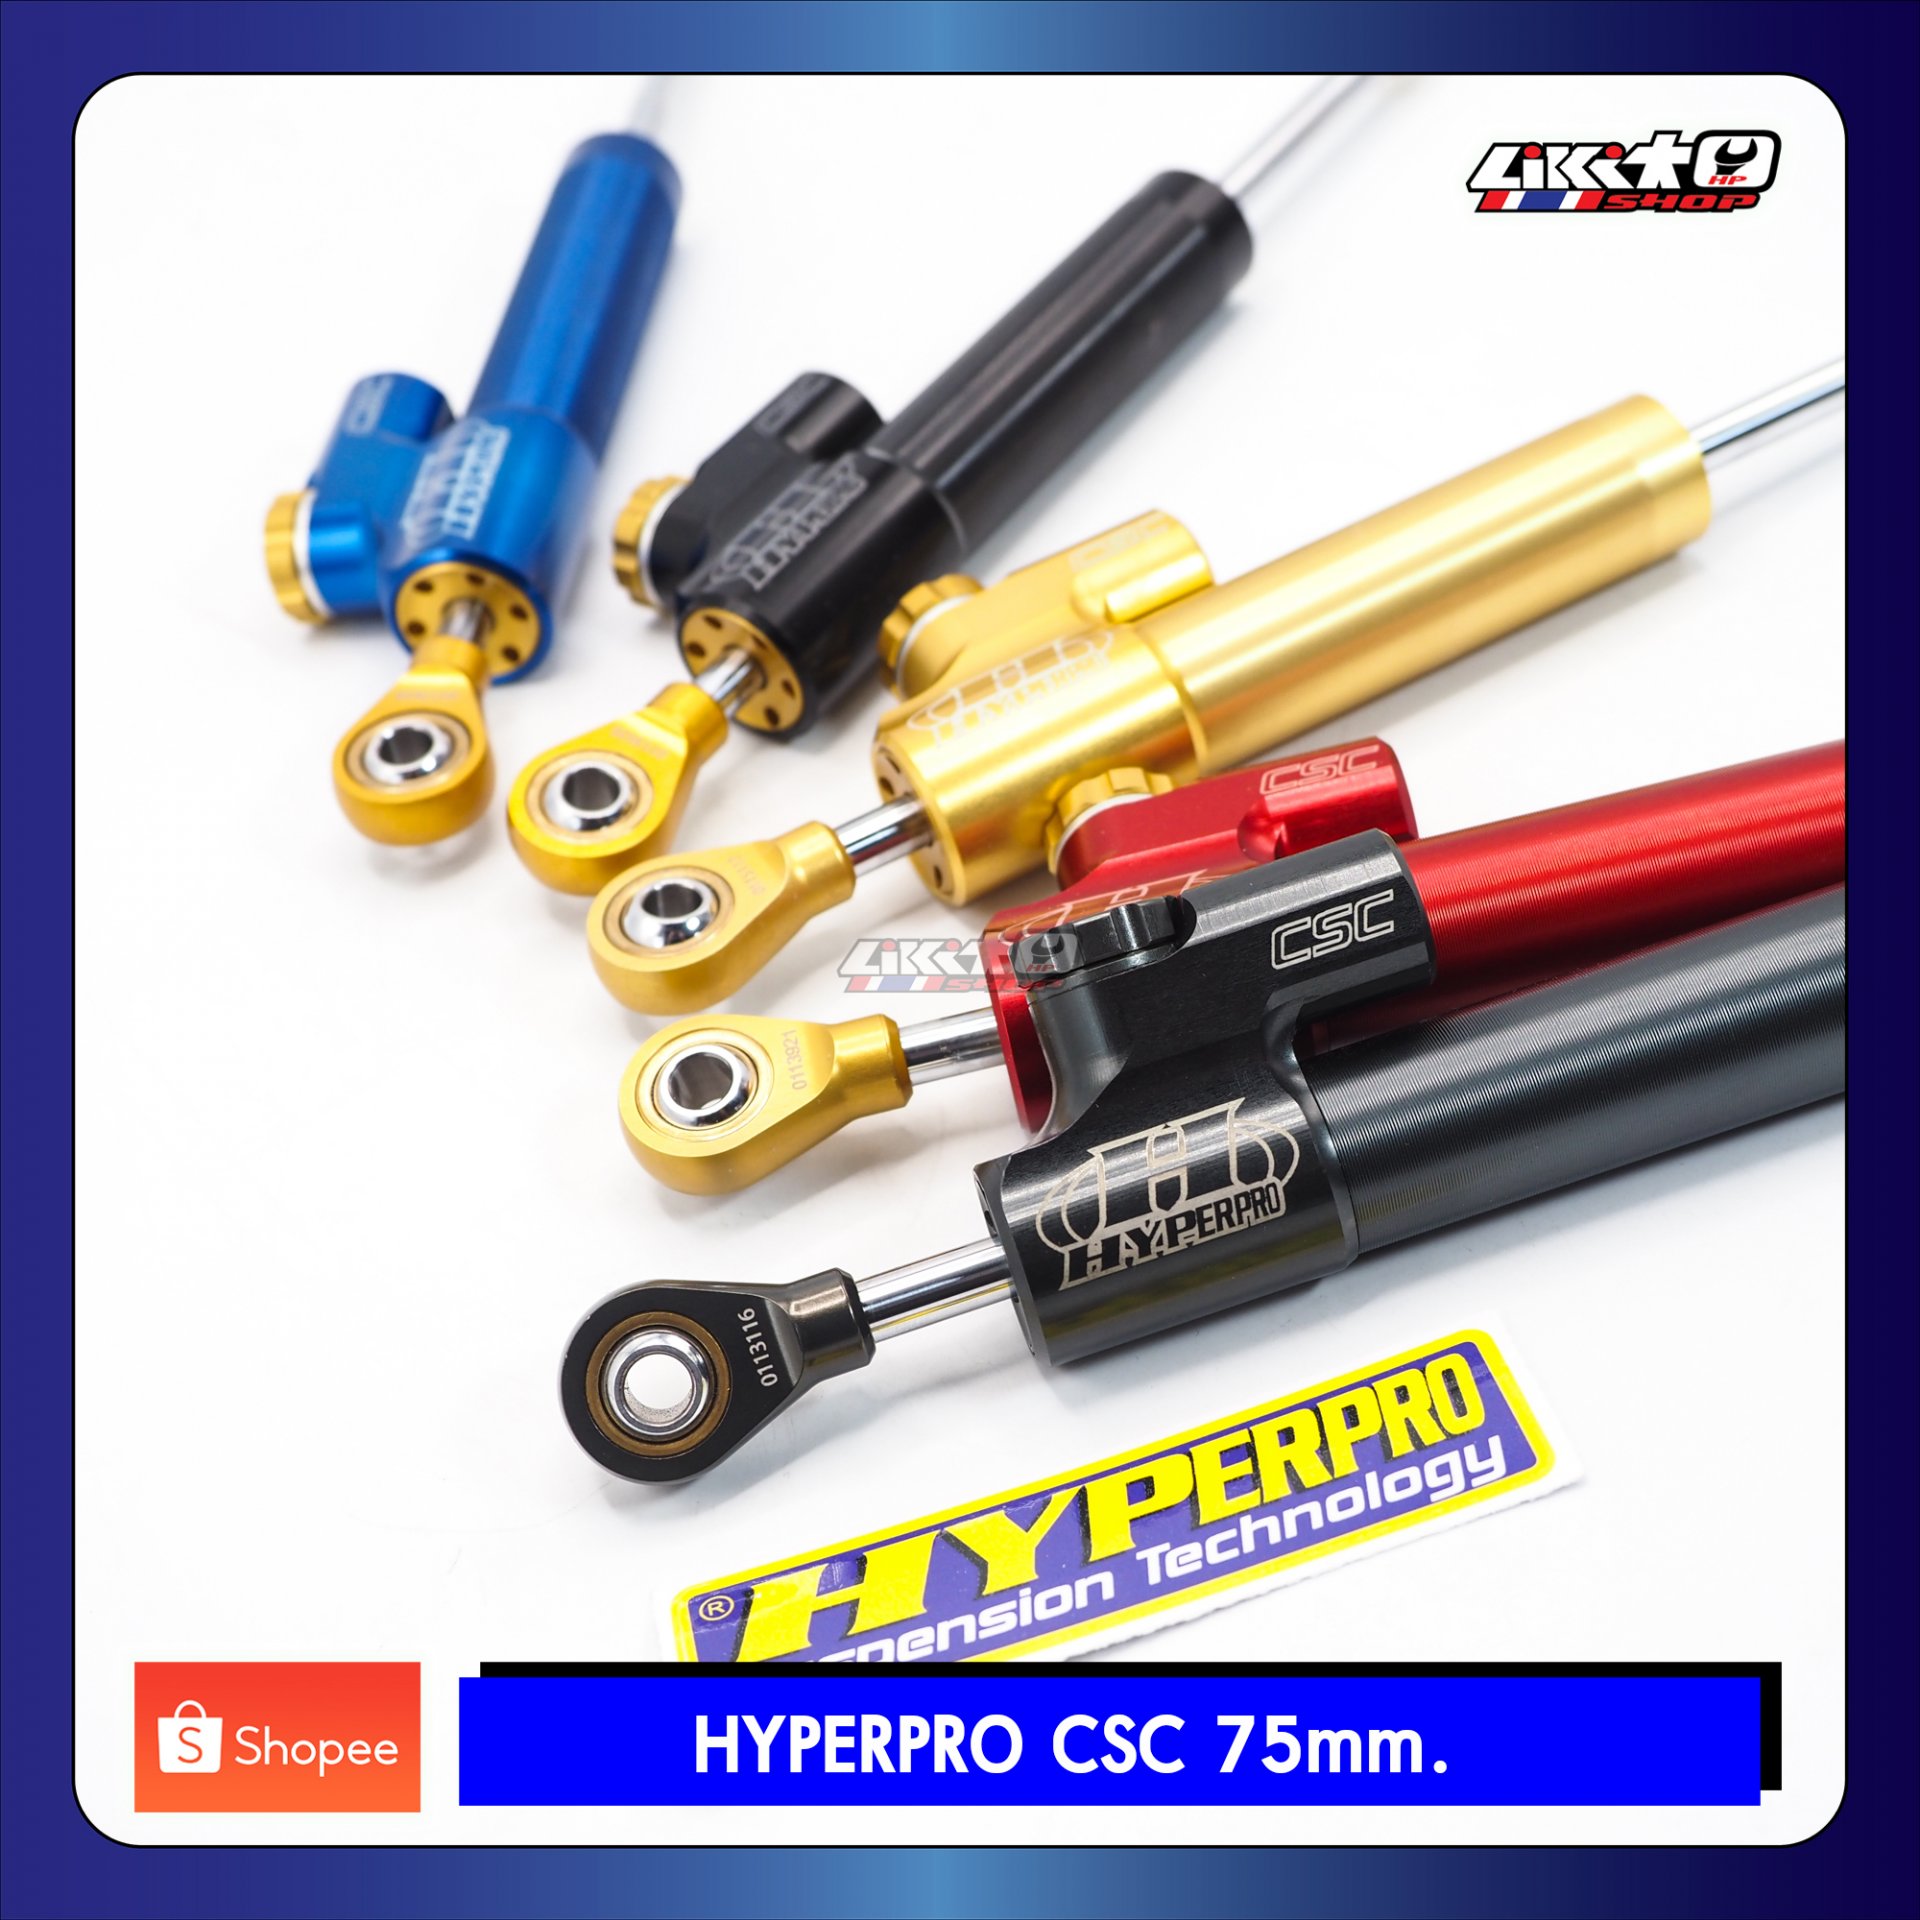 Hyperpro CSC